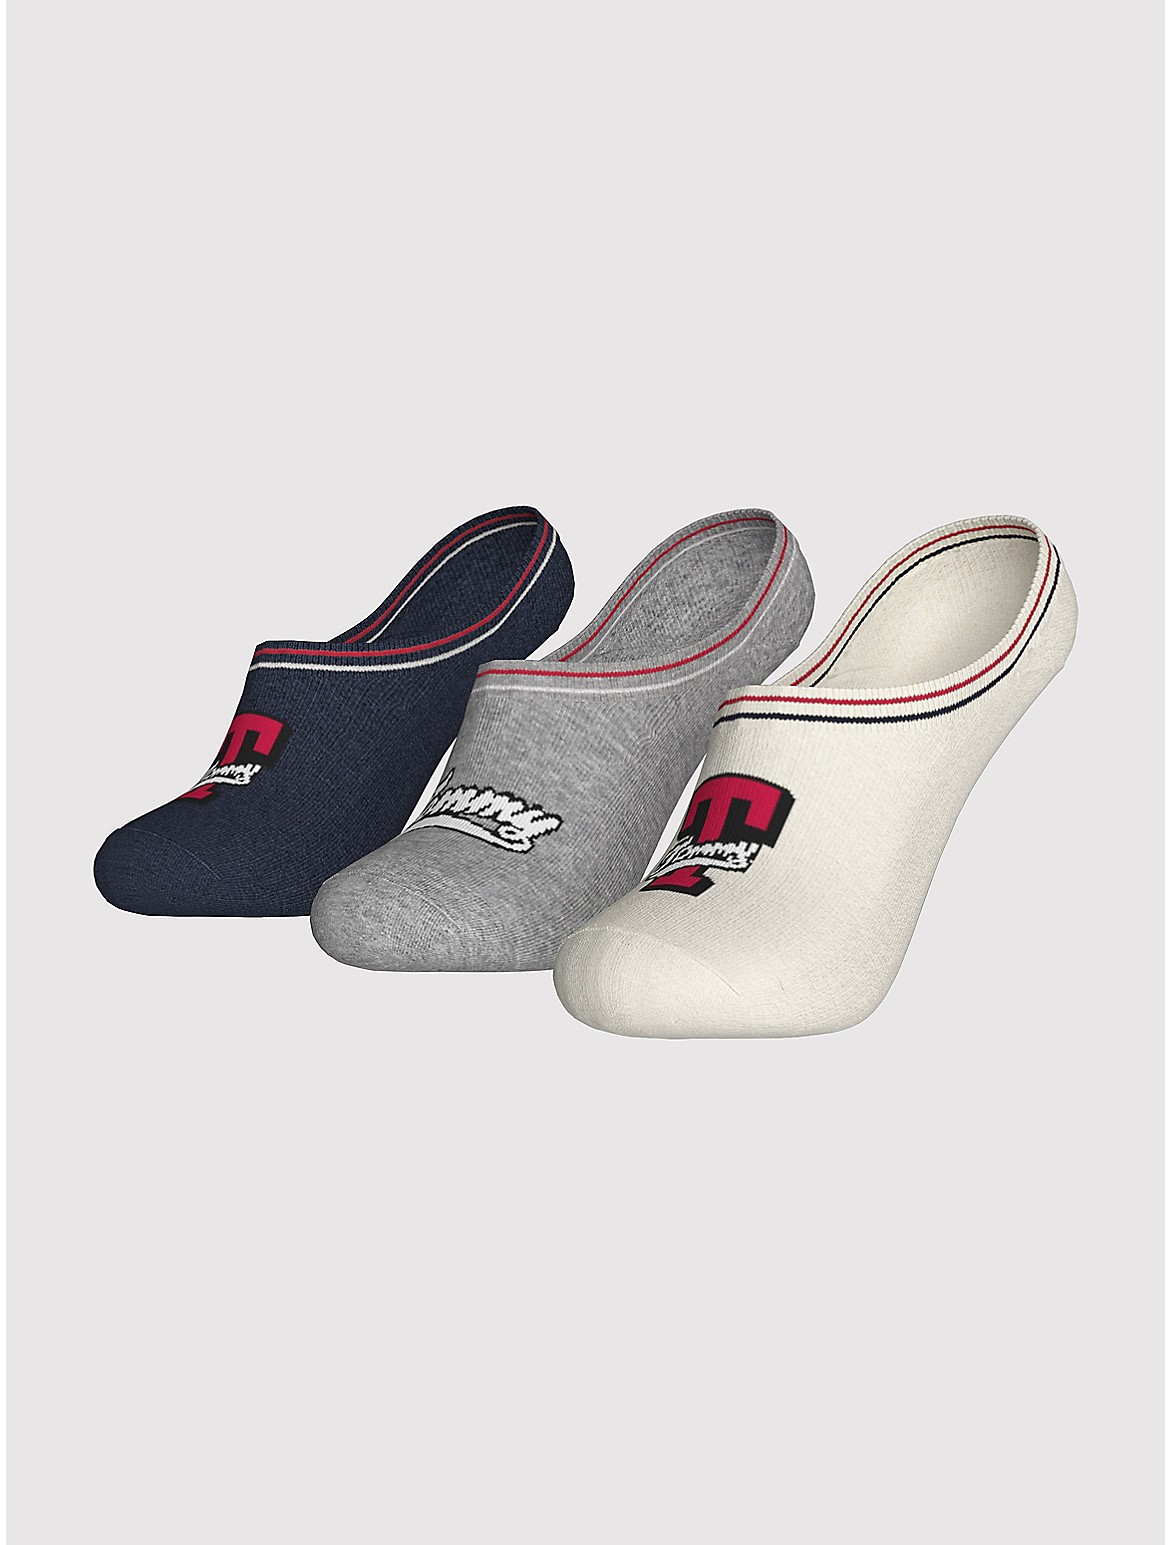 Tommy Hilfiger Girls' Kids' Liner Sock 3-Pack - White - L